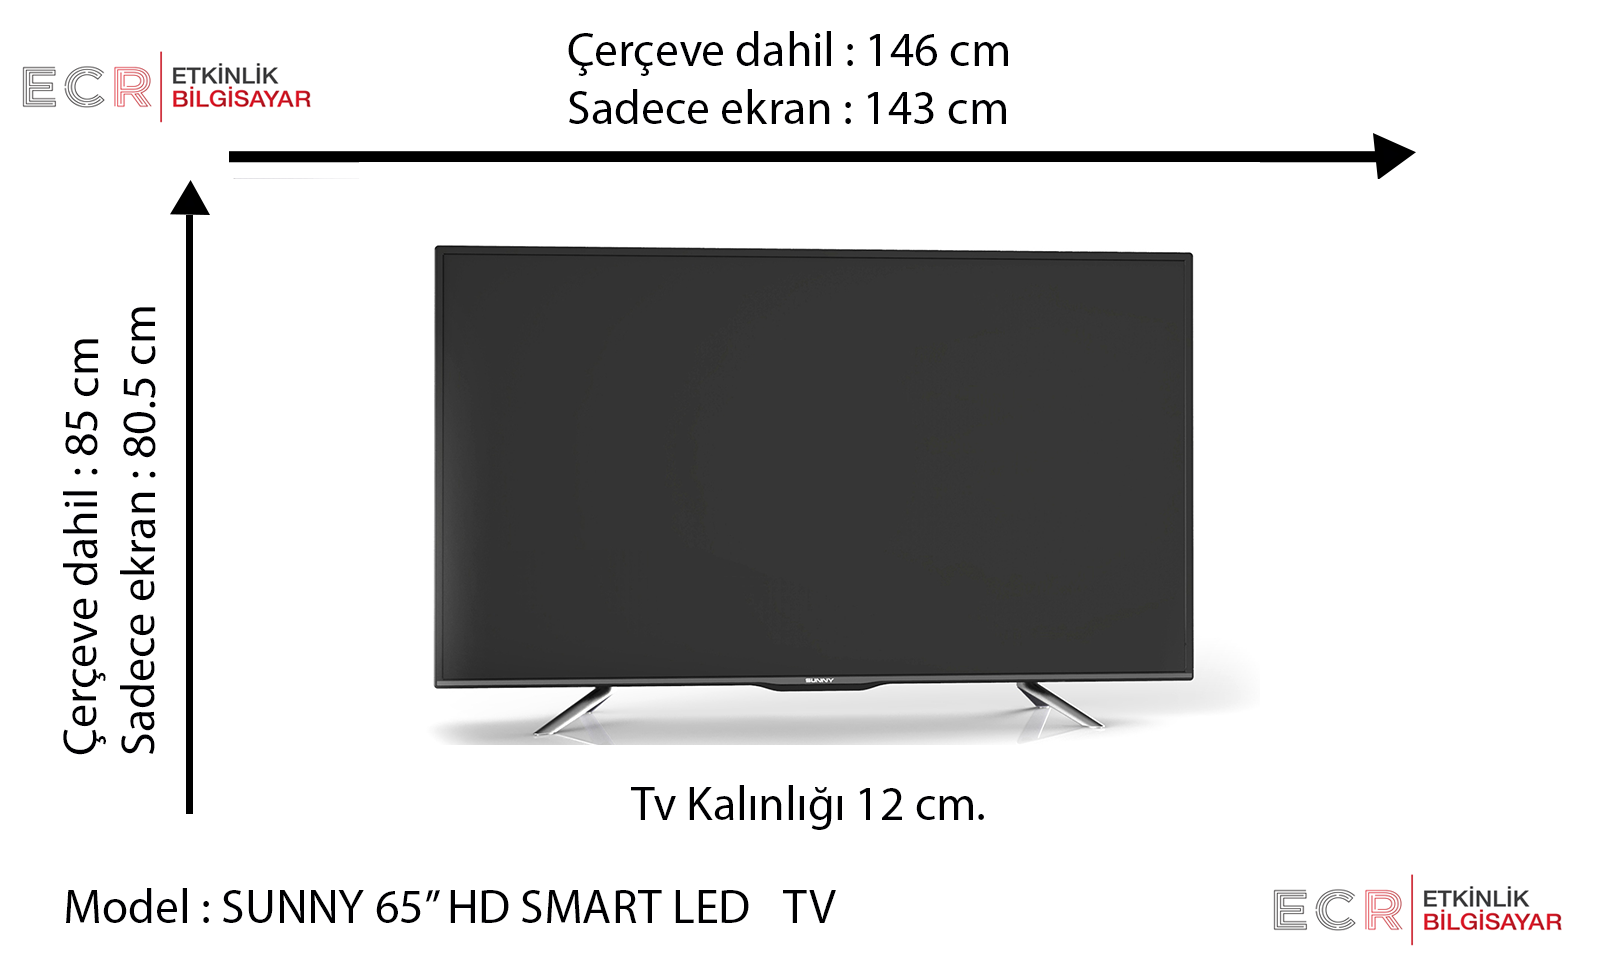 Диагонали телевизоров sony. Размер телевизора самсунг 50 дюймов. Телевизор самсунг 75 дюймов габариты высота ширина. Телевизор 65 дюймов Размеры.